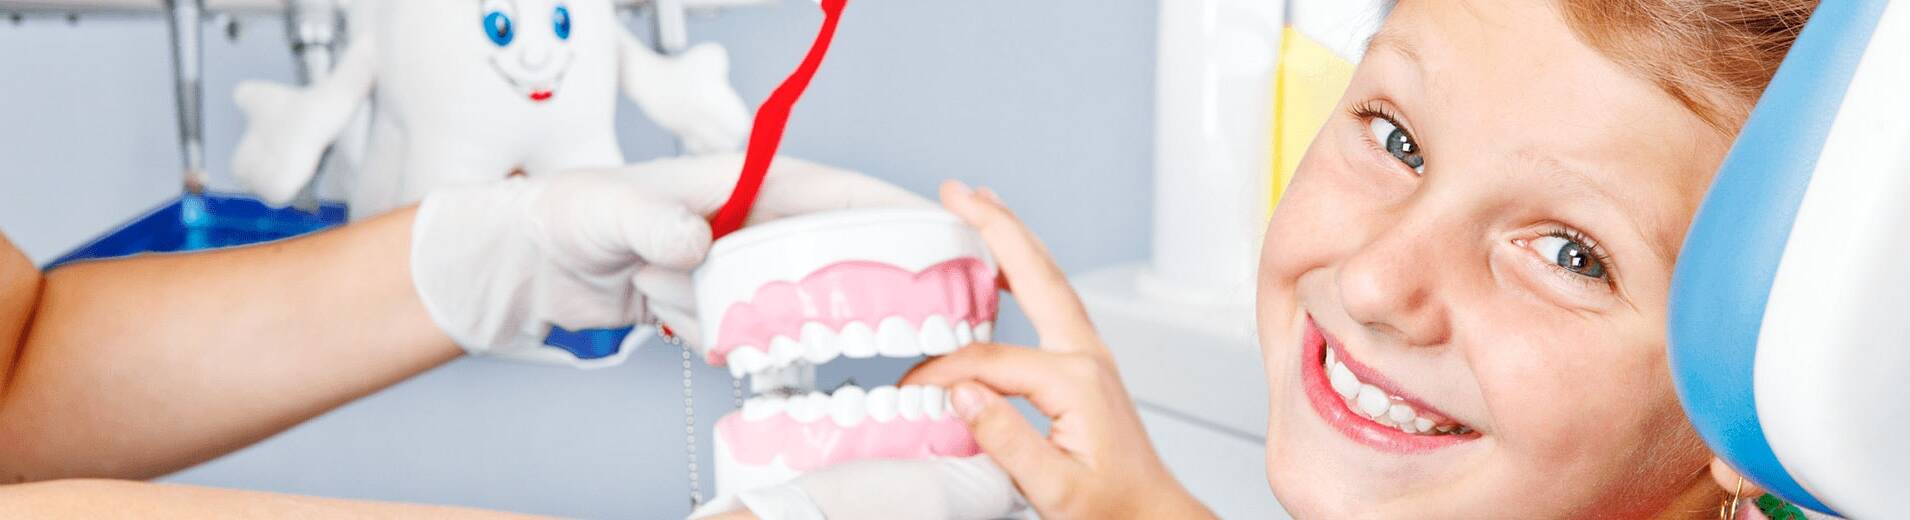 Детская стоматология.  Лечение молочных зубов